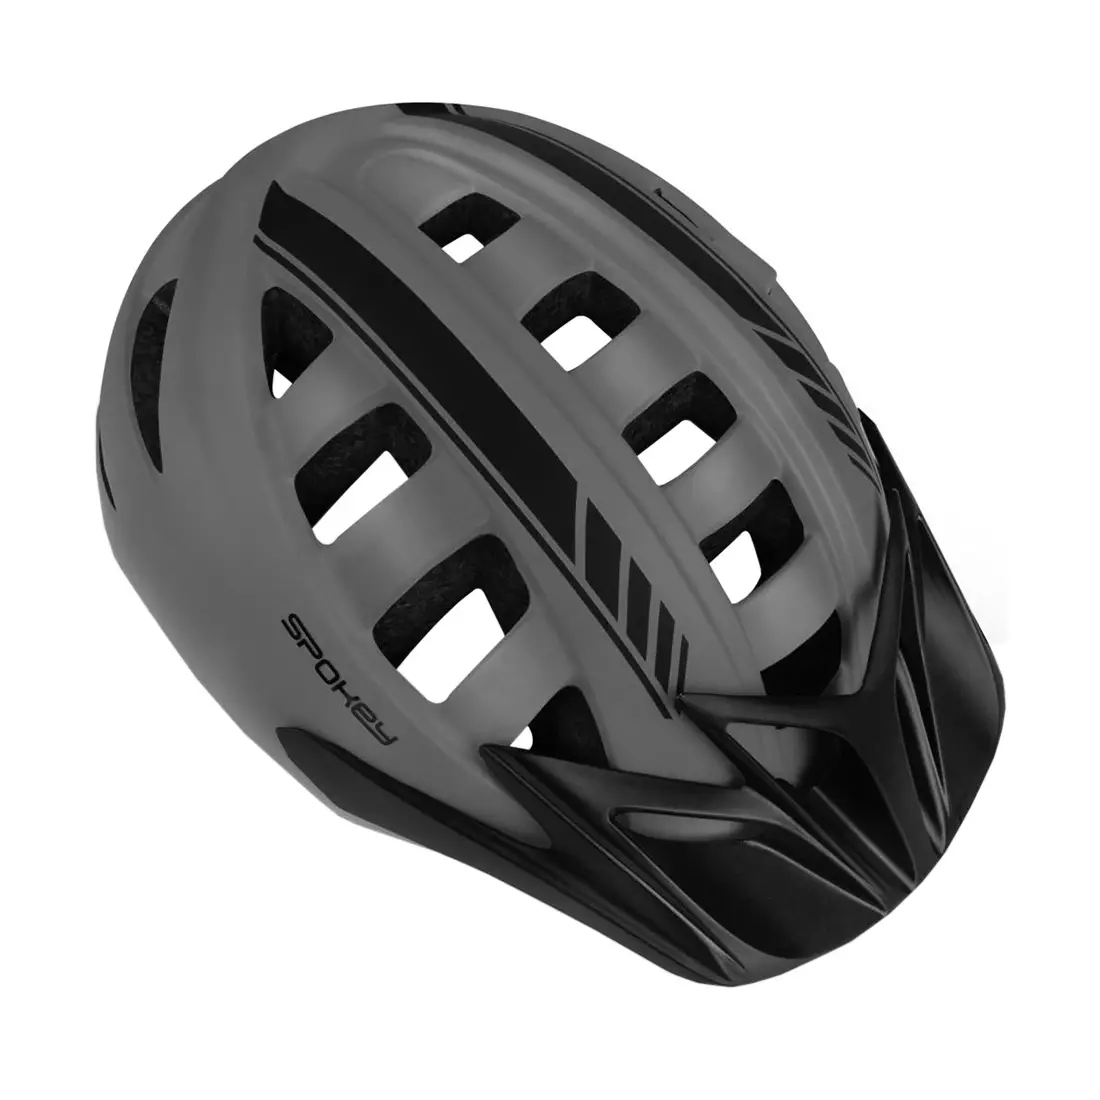 SPOKEY SPEED bicycle helmet, black